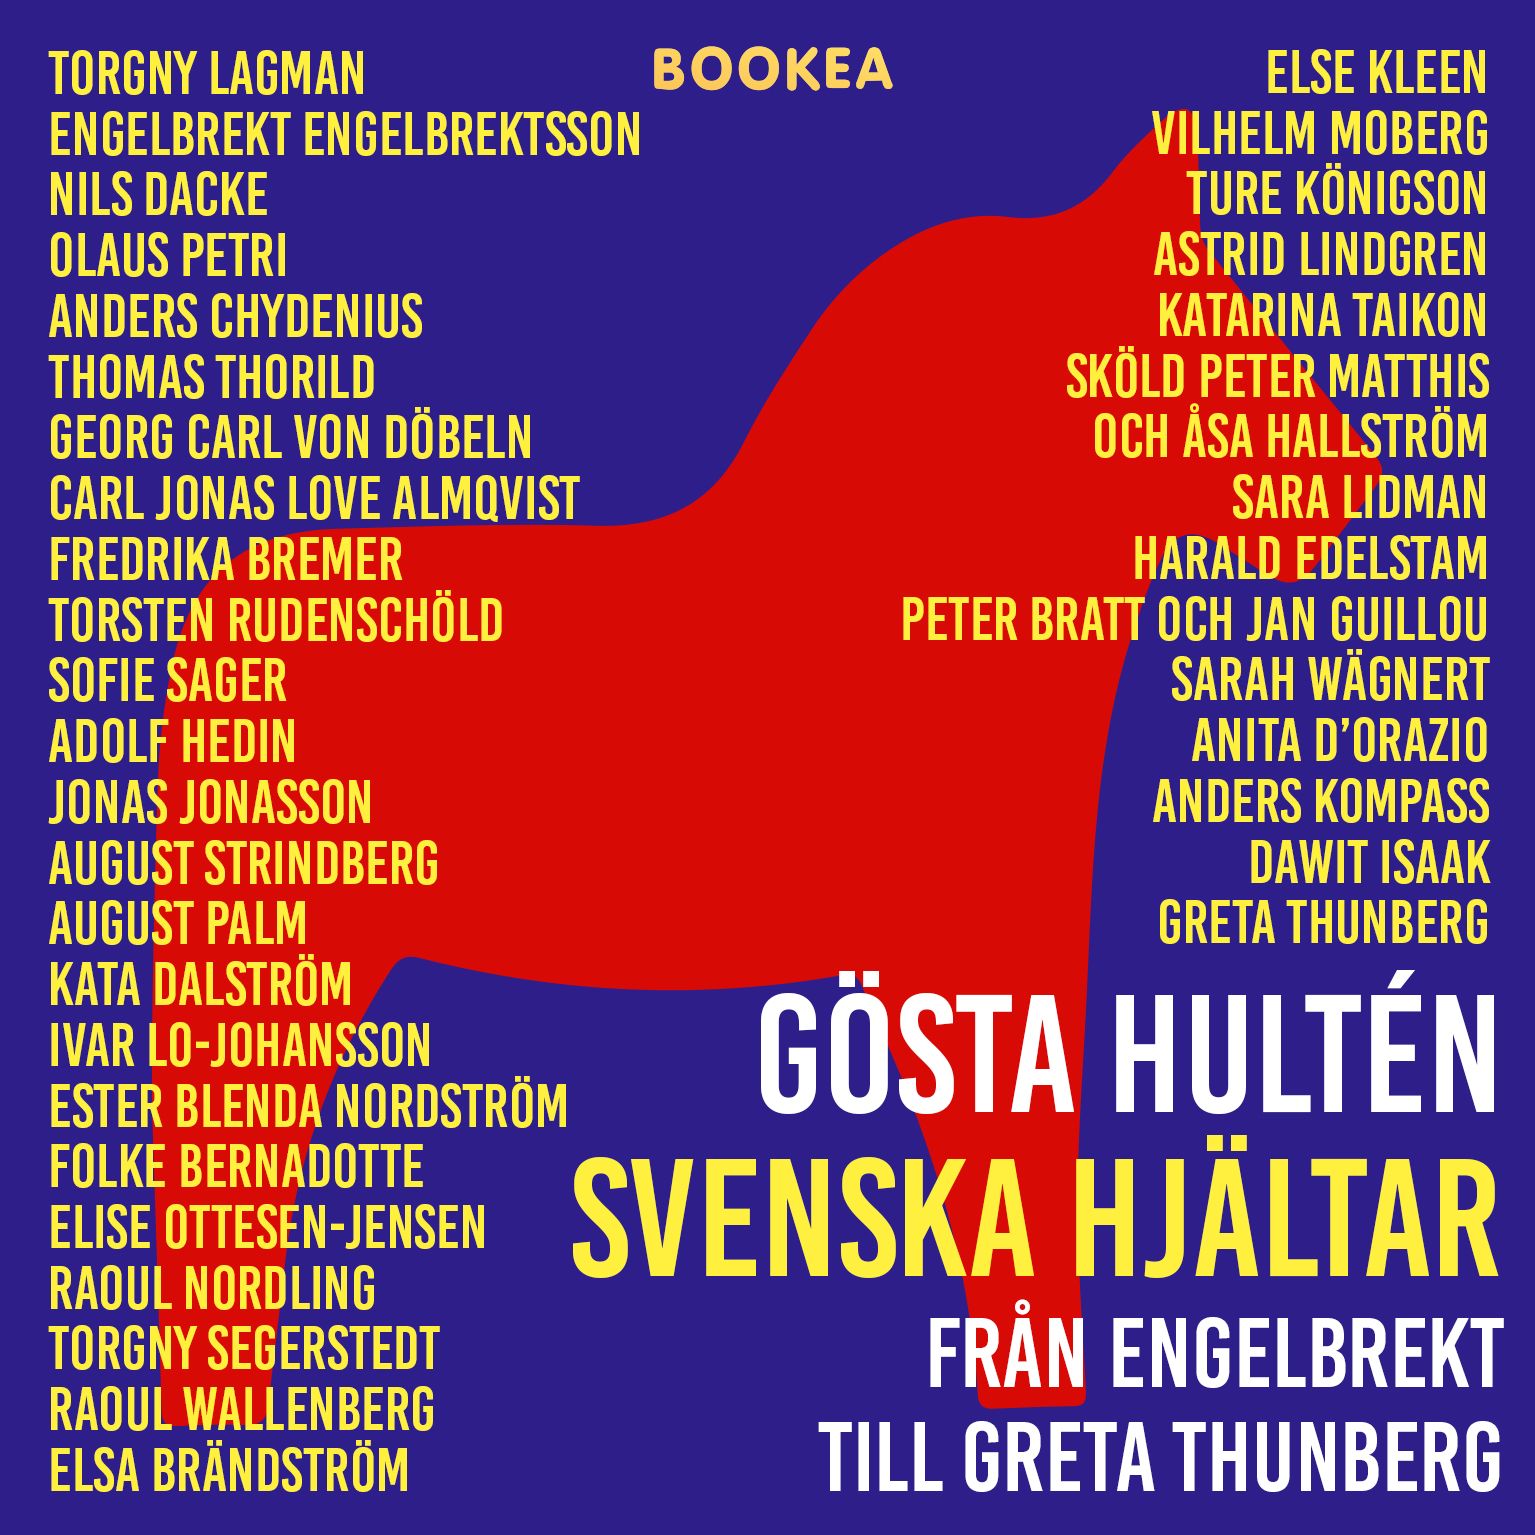 Svenska hjältar - från Engelbrekt till Greta Thunberg, ljudbok av Gösta Hultén